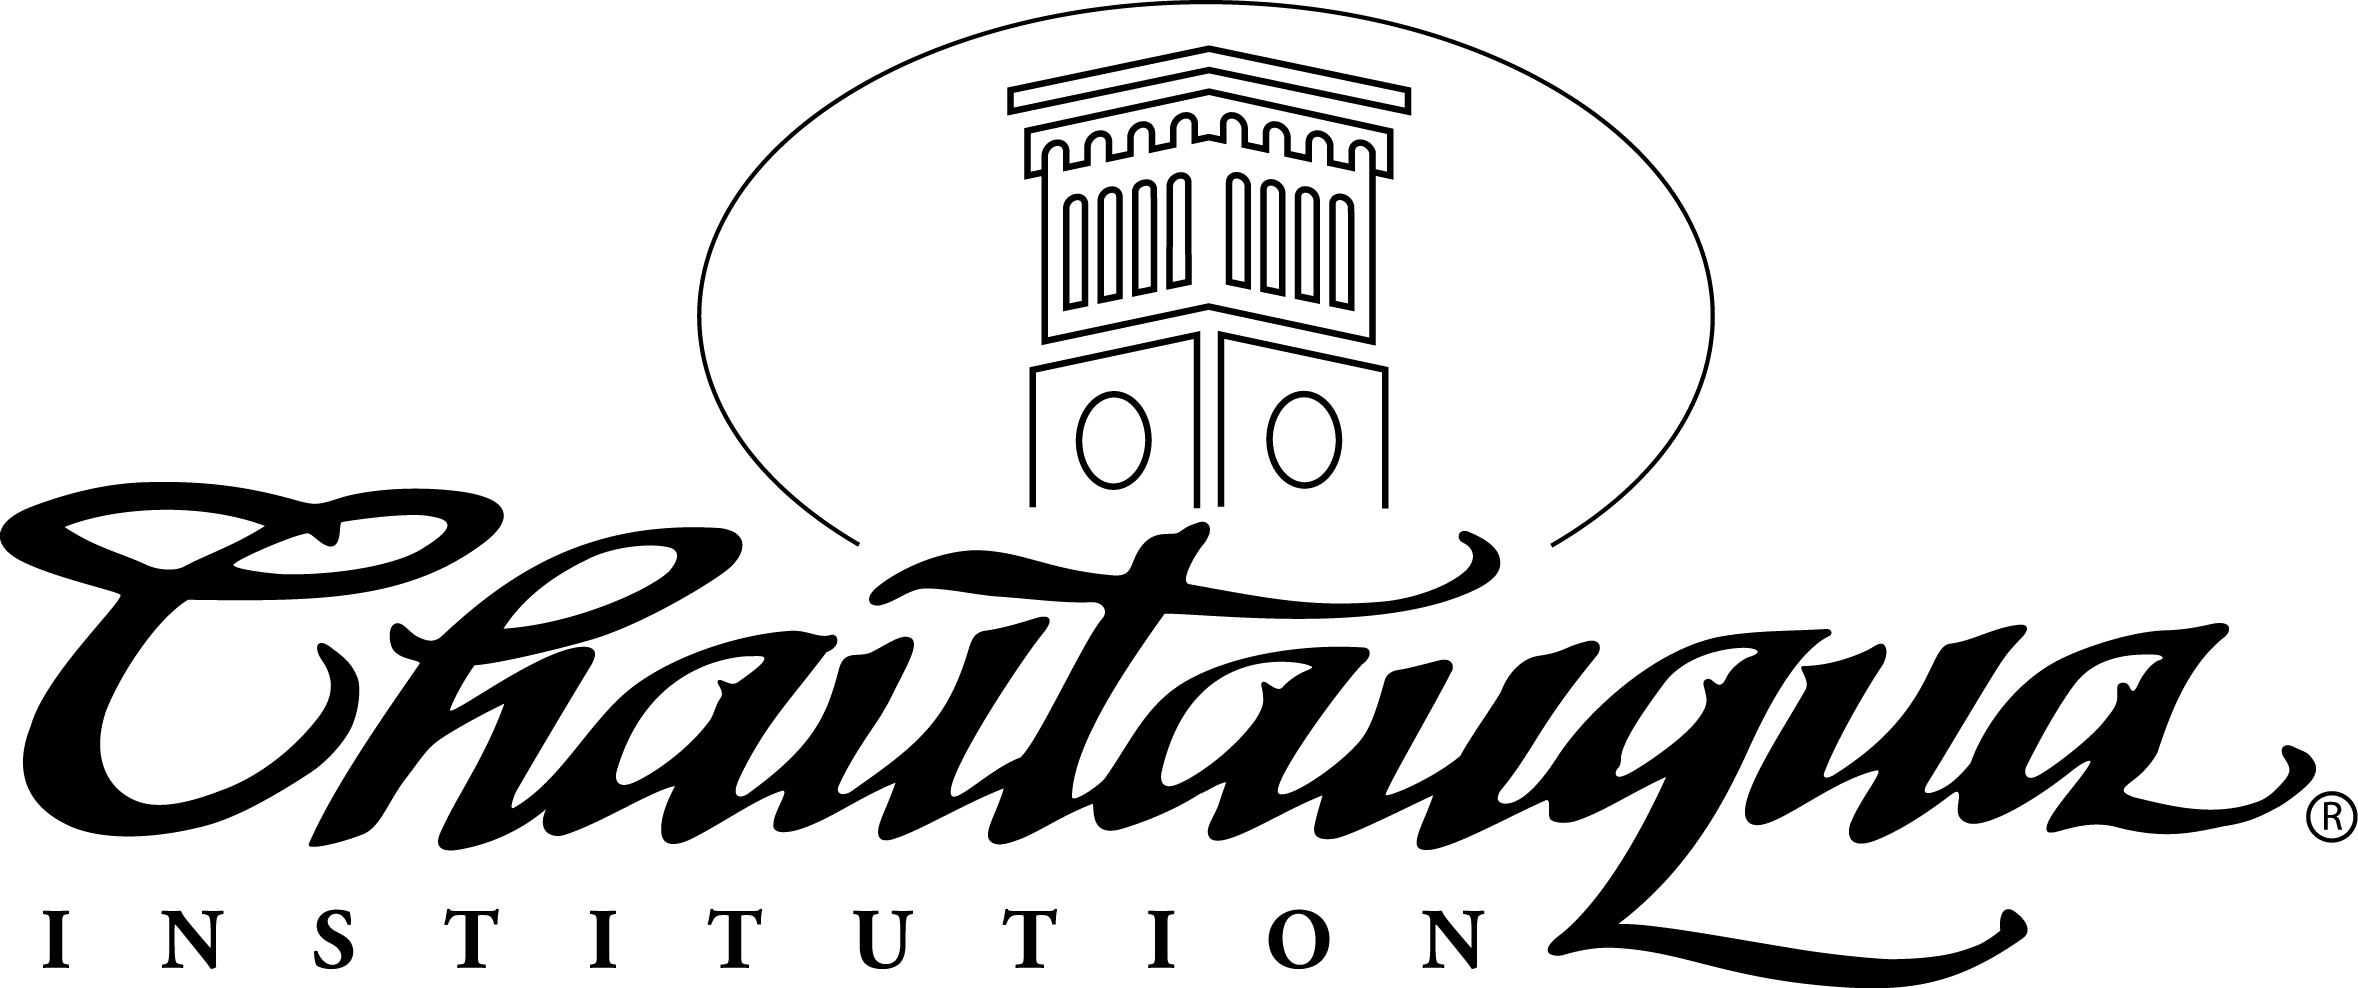 Chautauqua logo